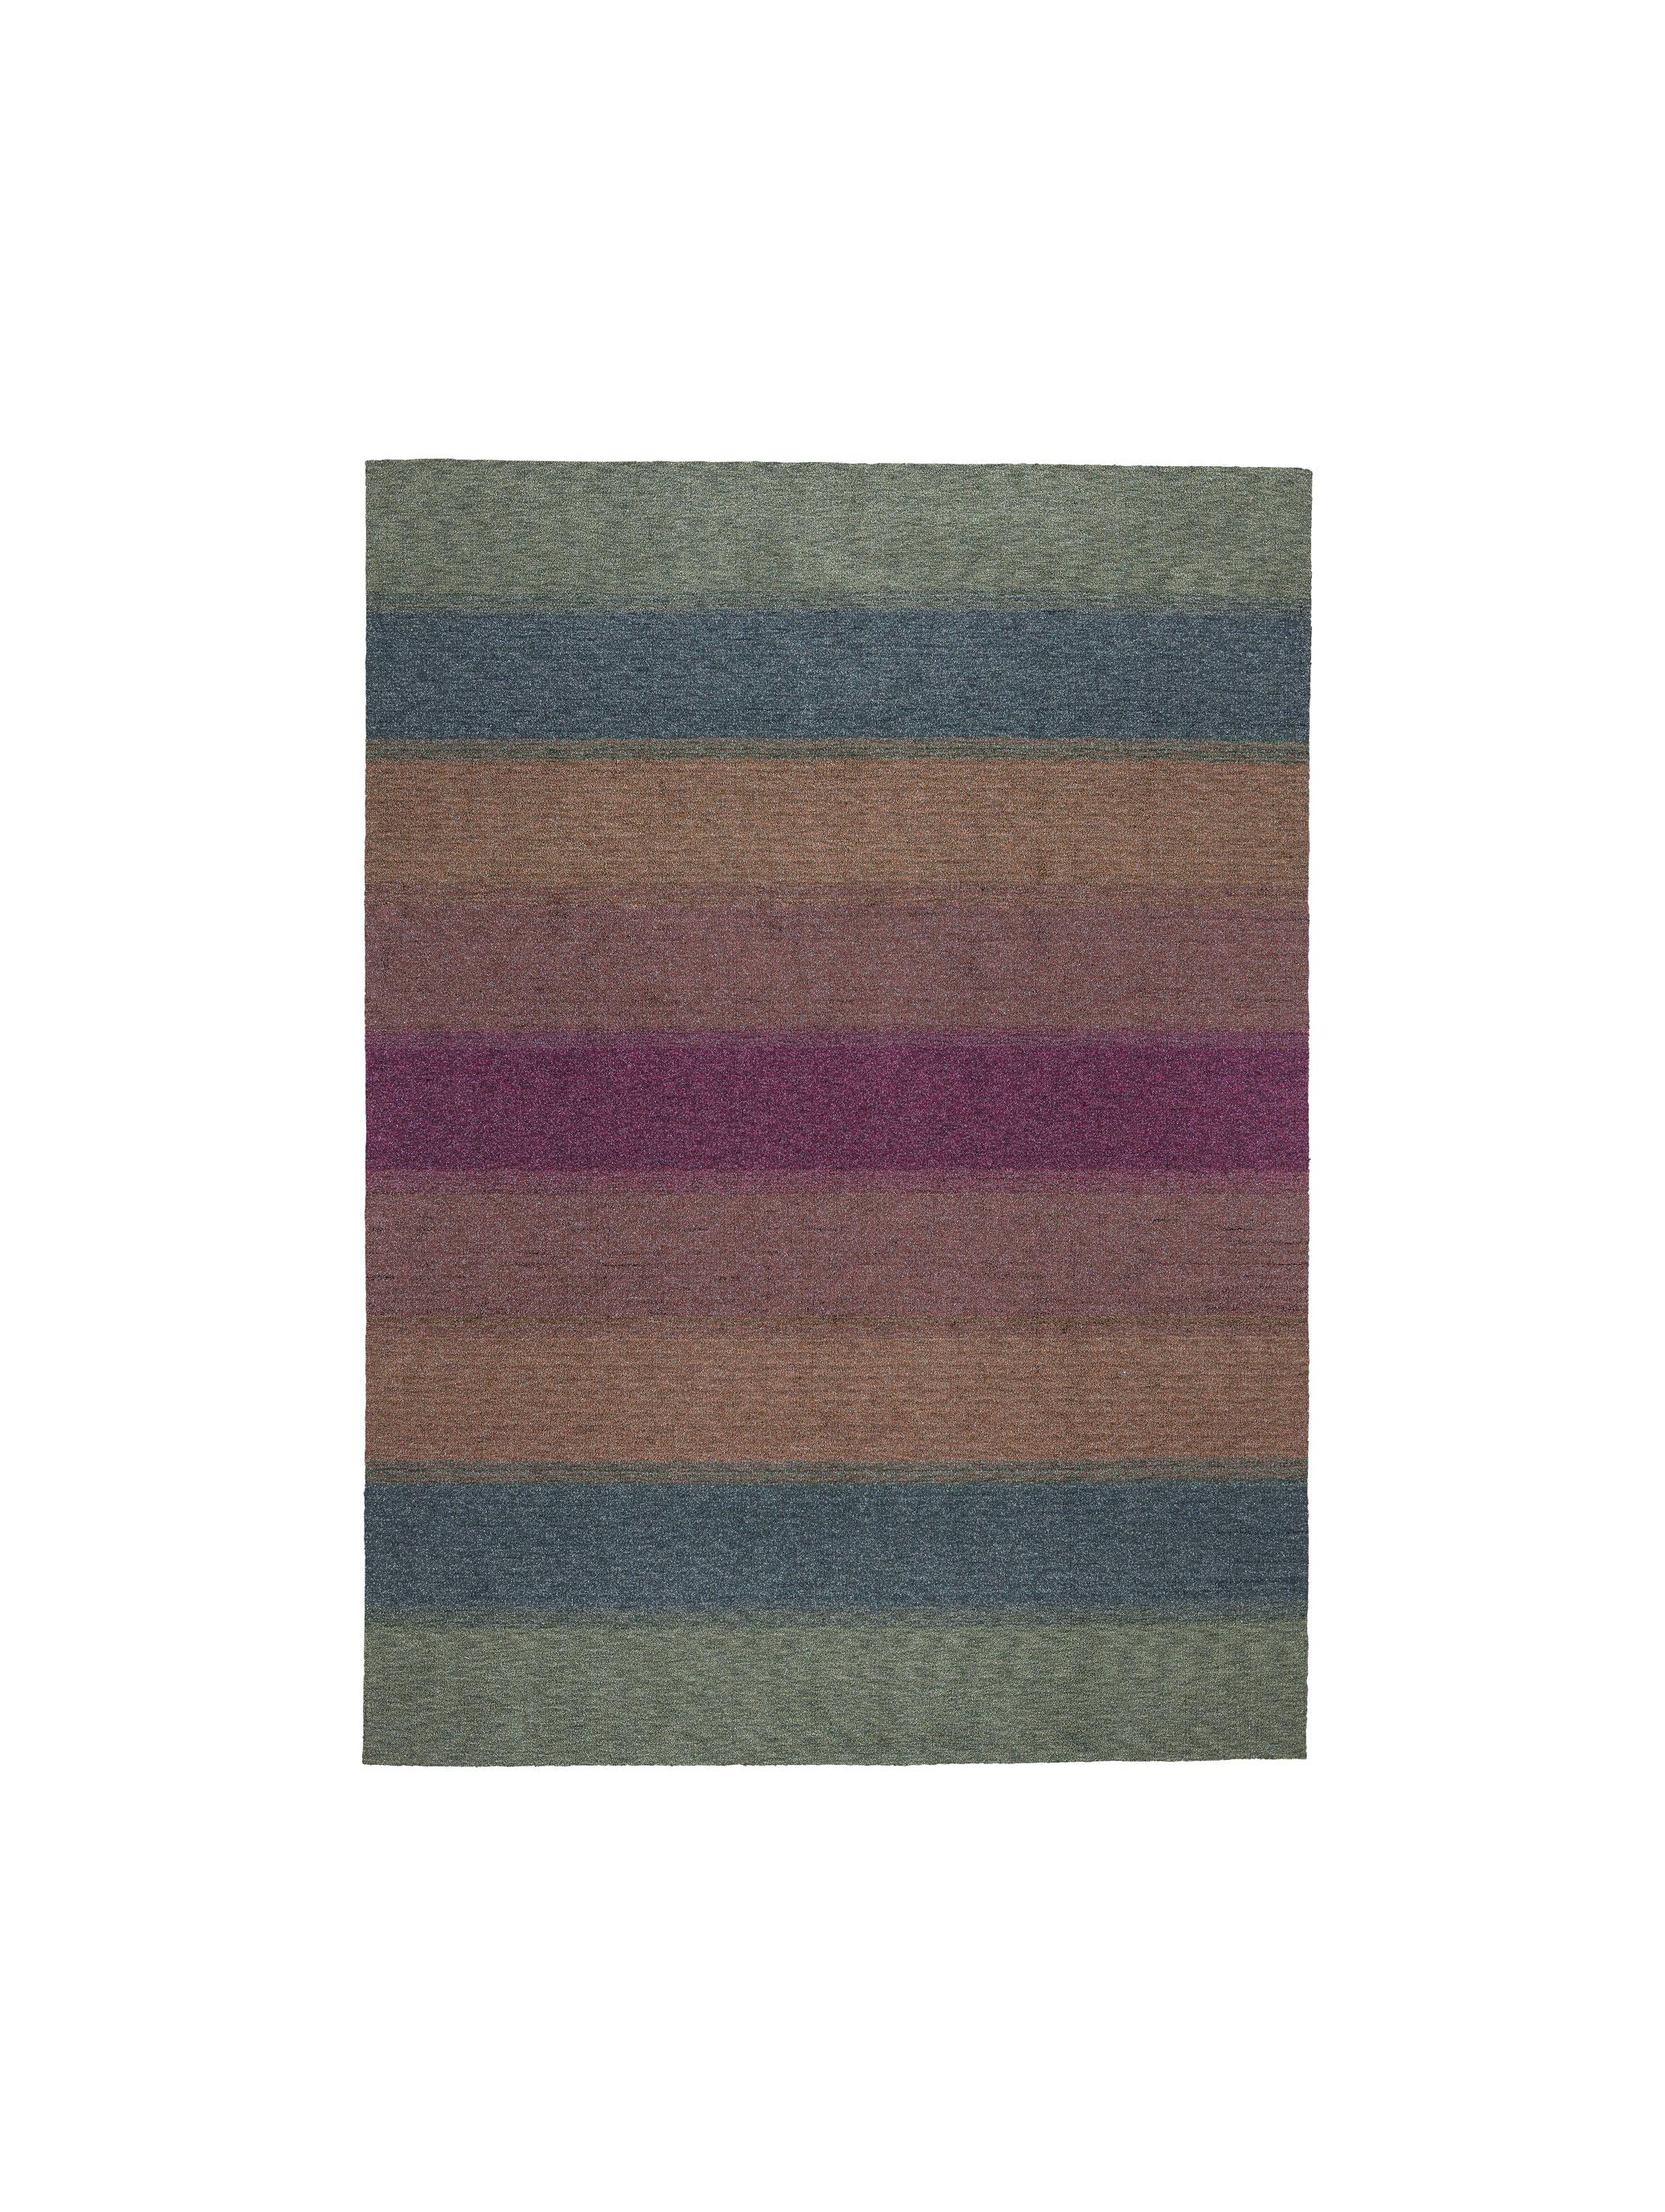 Gemeinsam mit Marco De Vincenzo beschloss cc-tapis, sich der Herausforderung zu stellen, seine ikonischen Lurex-Textilien in einen Teppich zu verwandeln.
 
Lurex ist ein MATERIAL, das in der Welt der Teppichherstellung sehr selten verwendet wird und